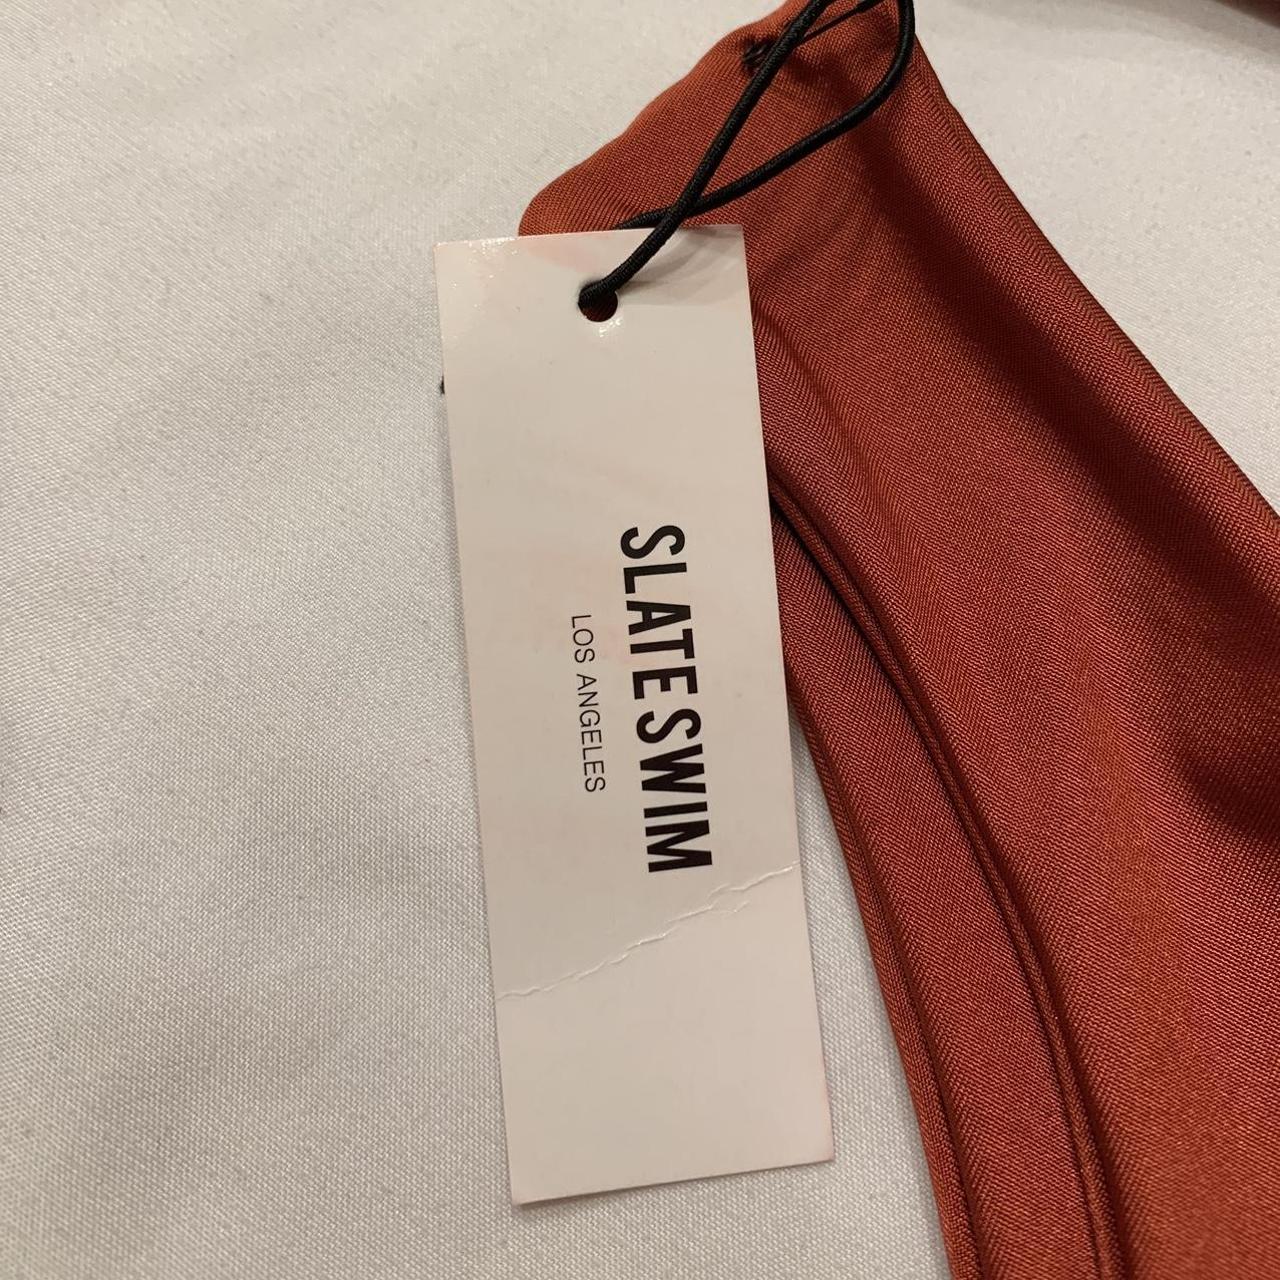 SlateSwim Orange/Rust Bikini Set Brand New Never... - Depop